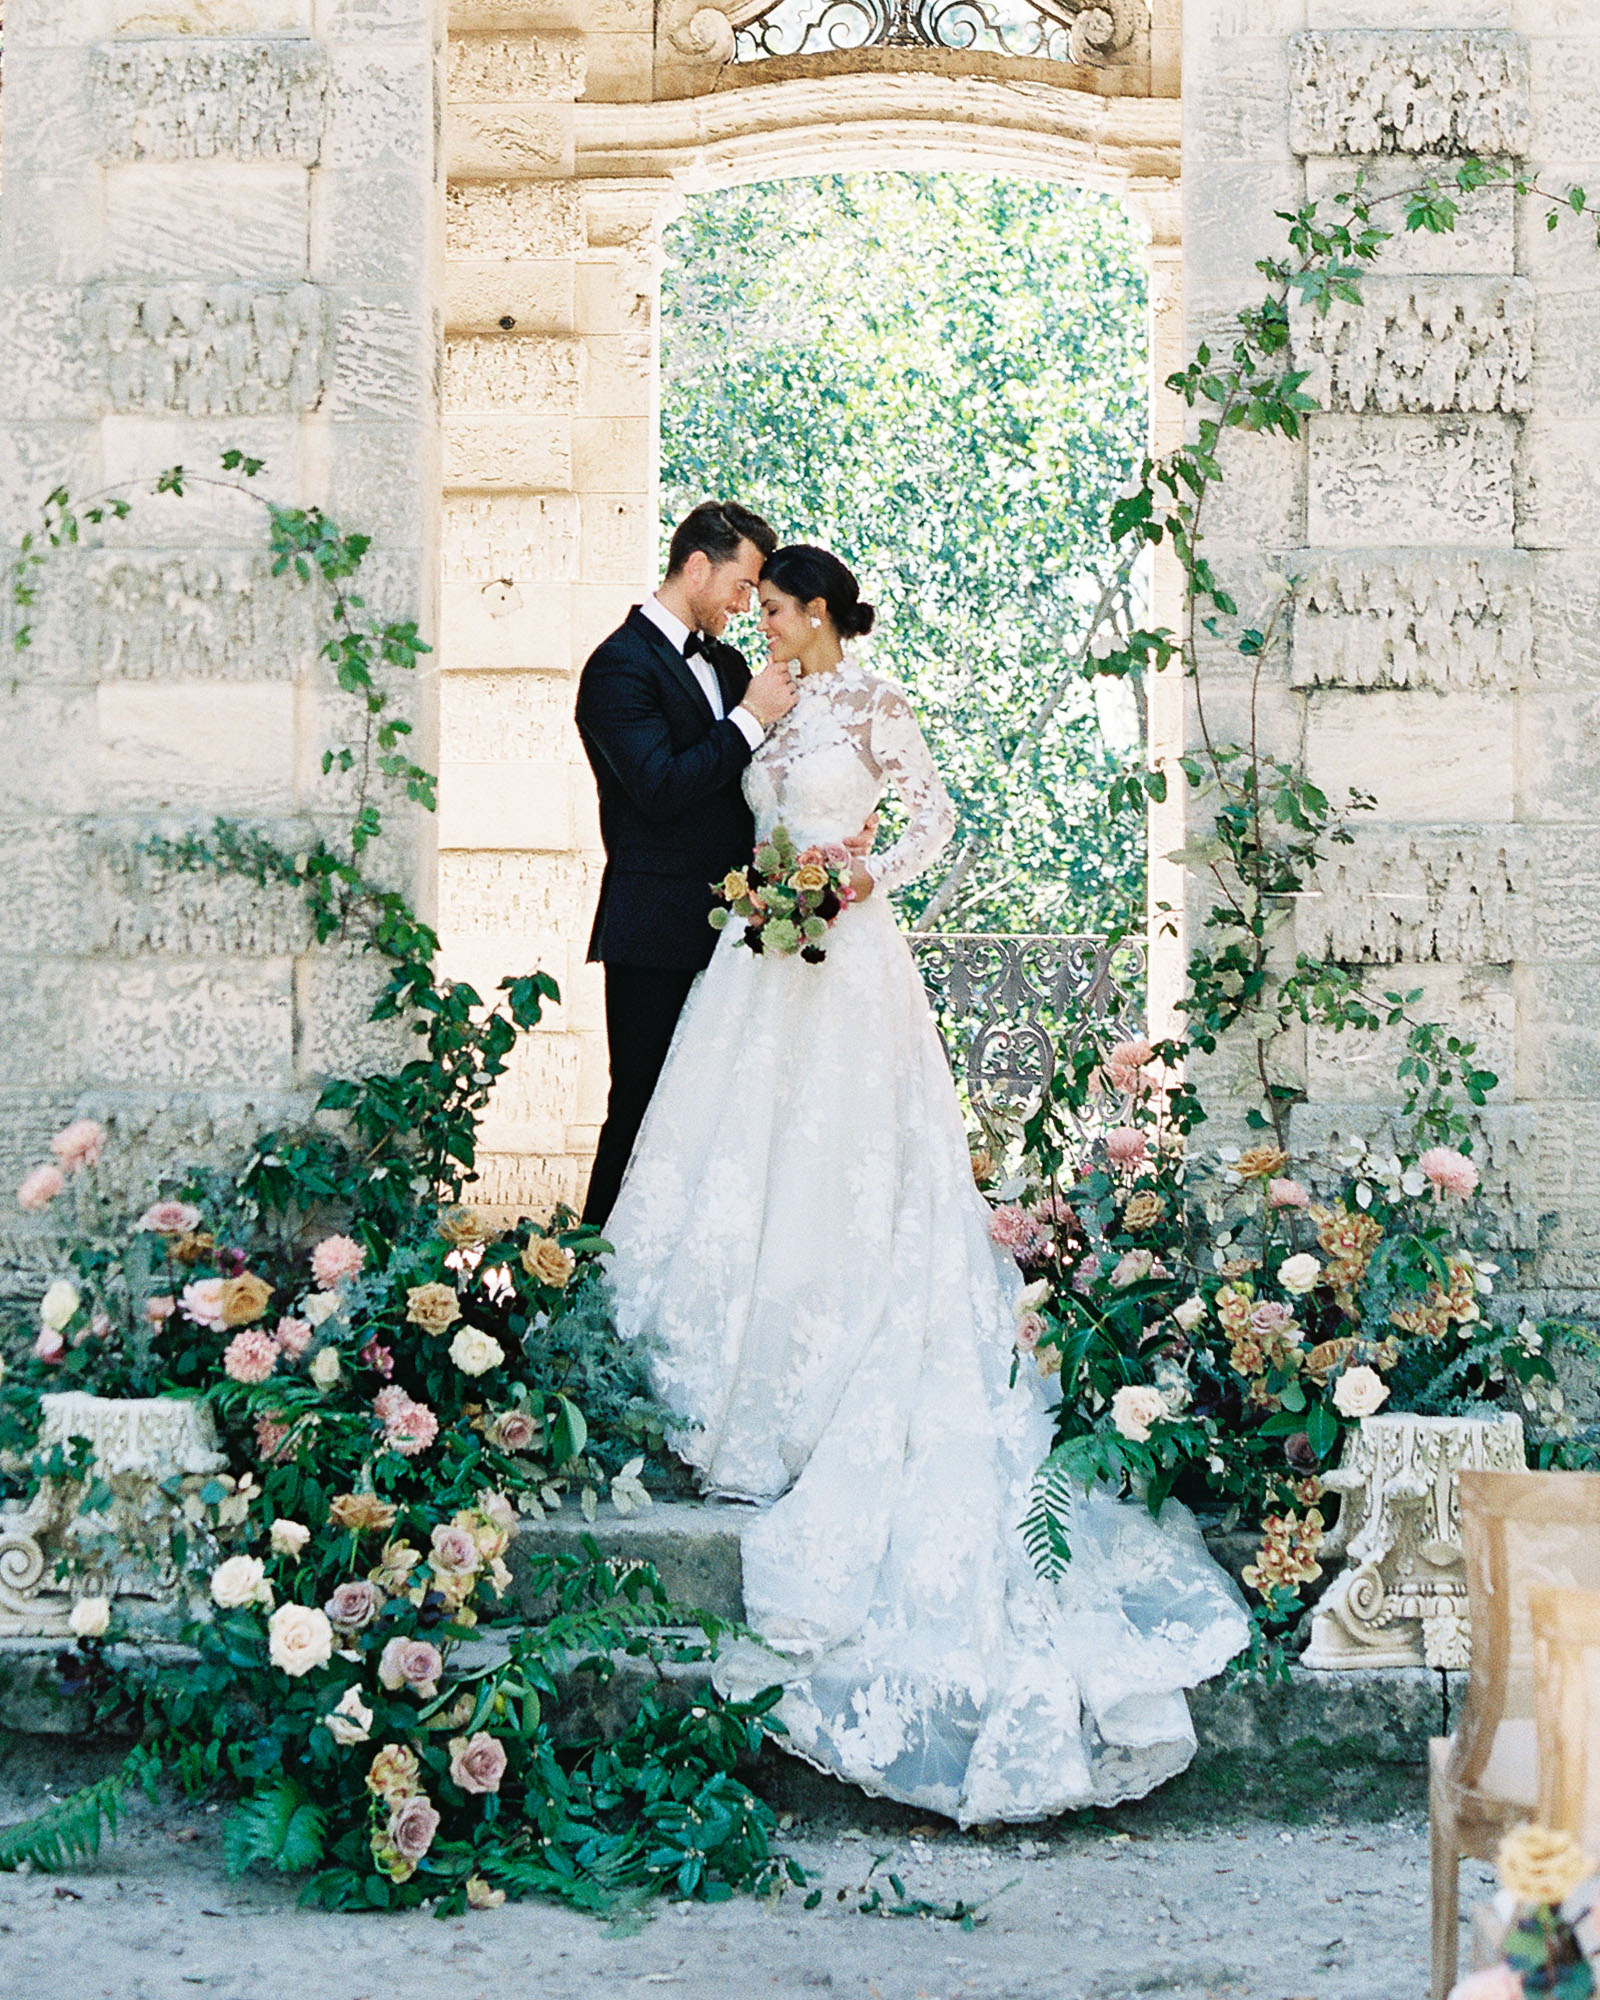 jp-liriano-photography-bride-groom-vizcaya-garden-miami-4